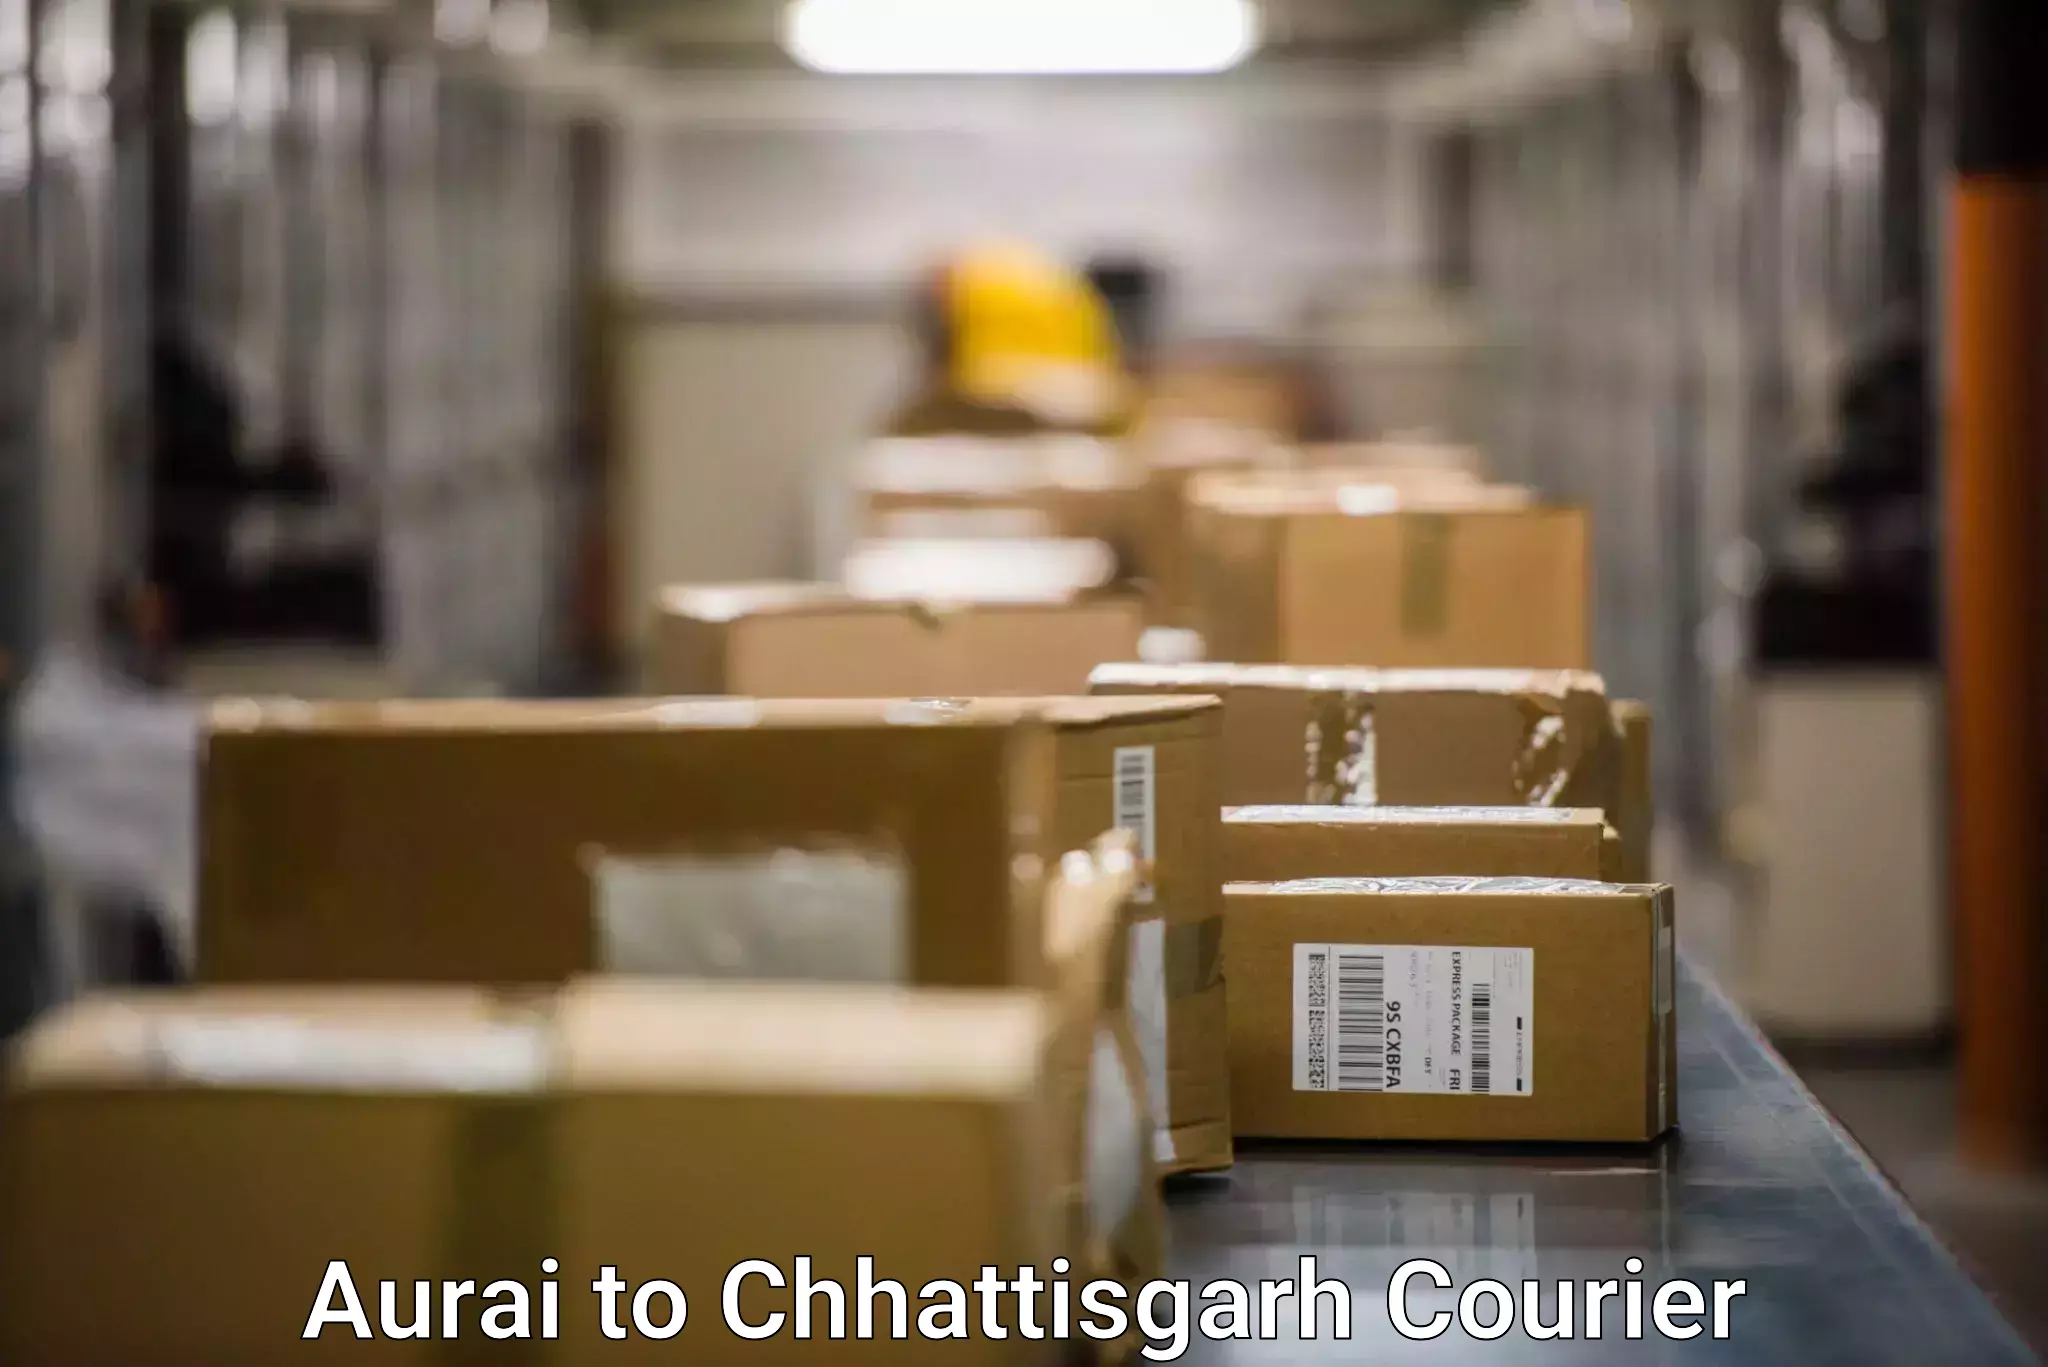 Multi-service courier options Aurai to Jagdalpur